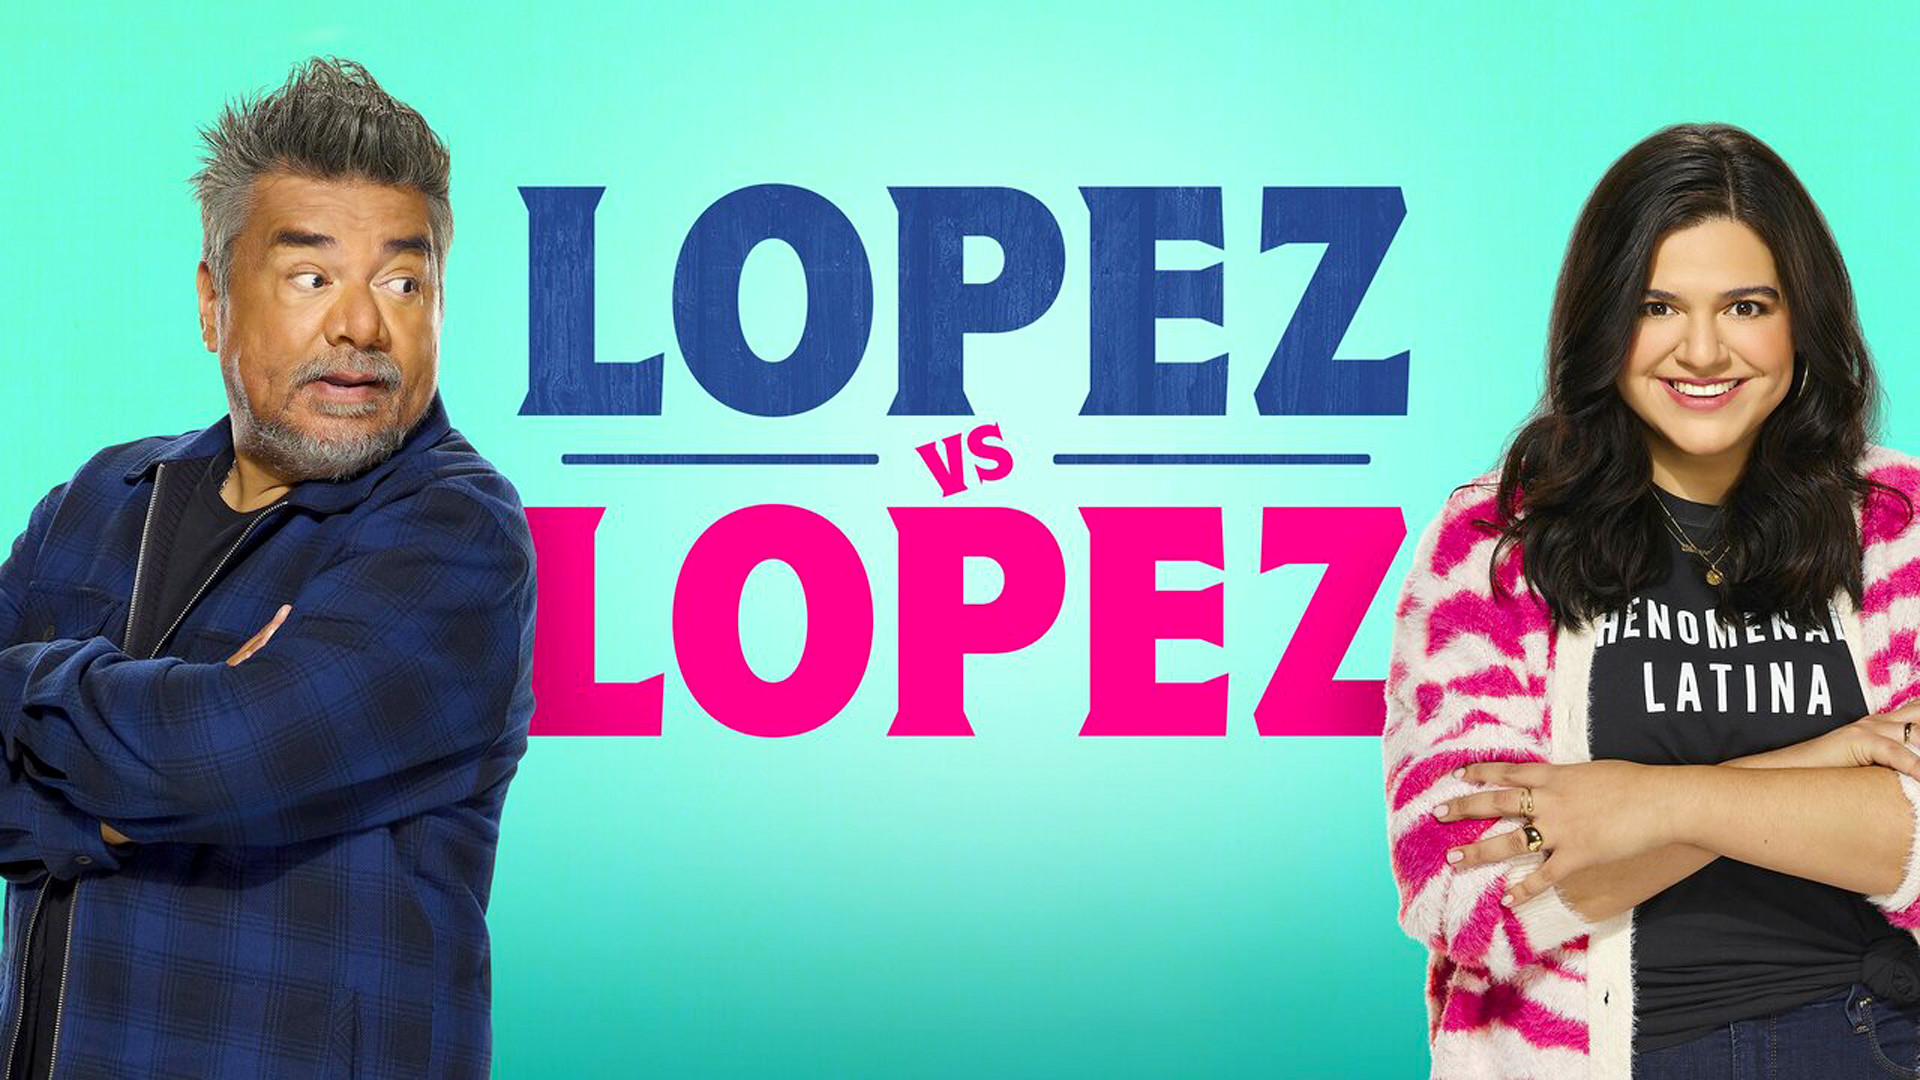 Promo poster for Lopez vs Lopez